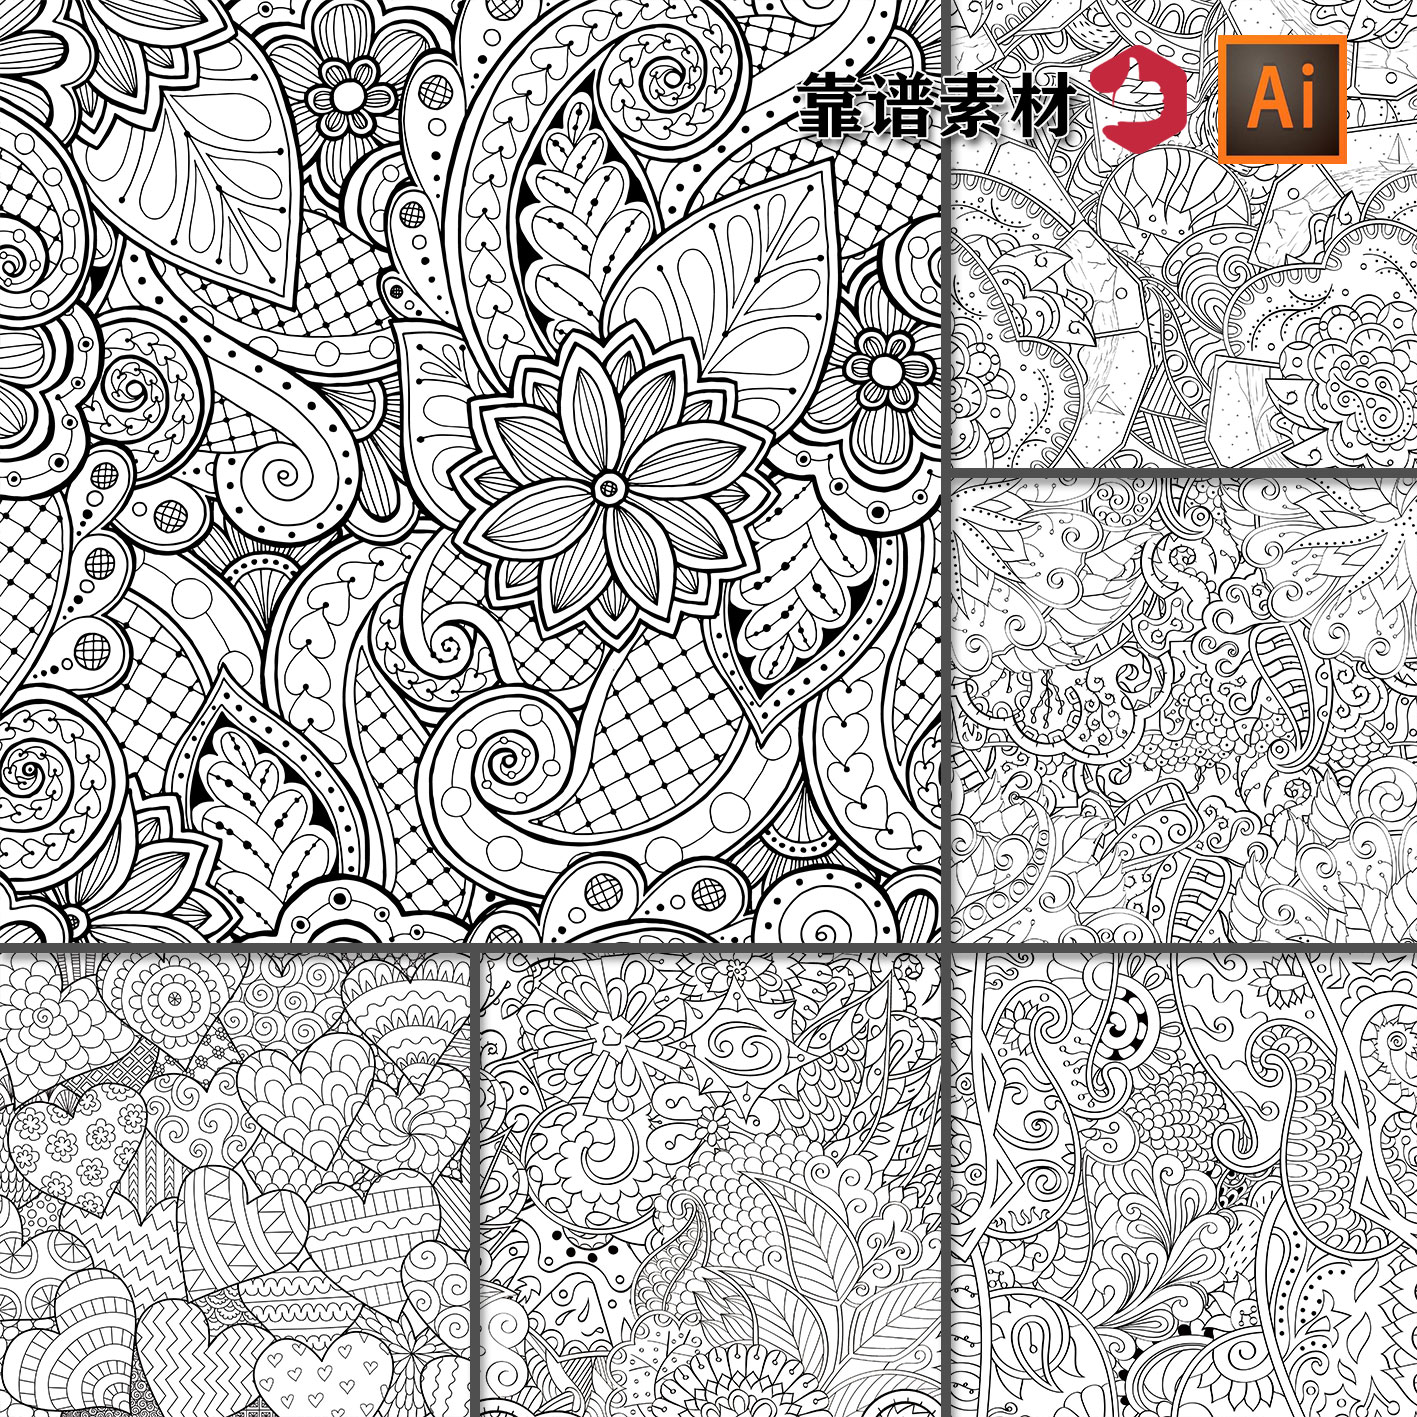 黑白线描素描线条鲜花植物花纹服饰面料墙纸印花图案AI设计素材